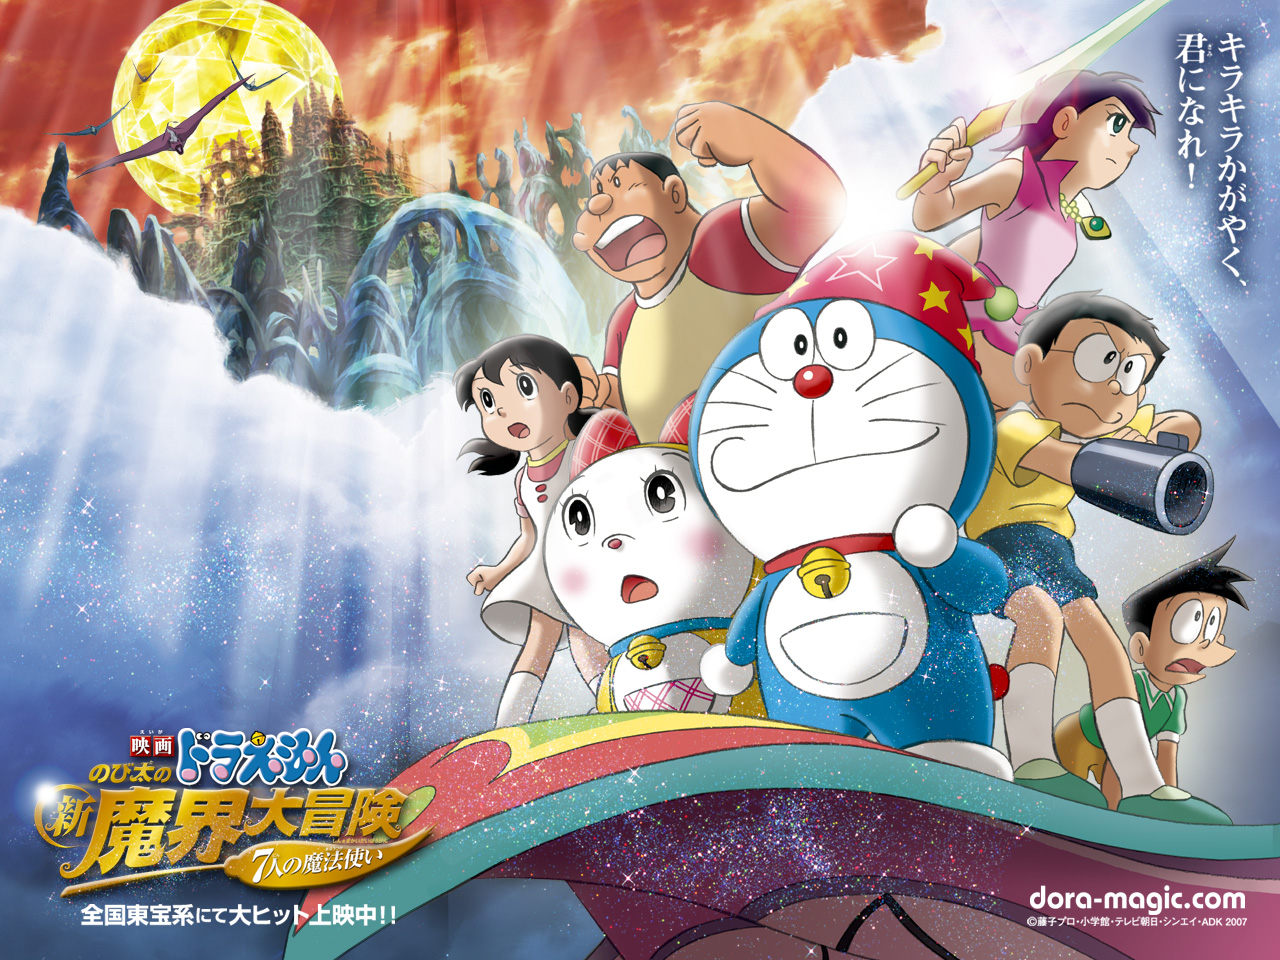 32k Doraemon Wallpaper